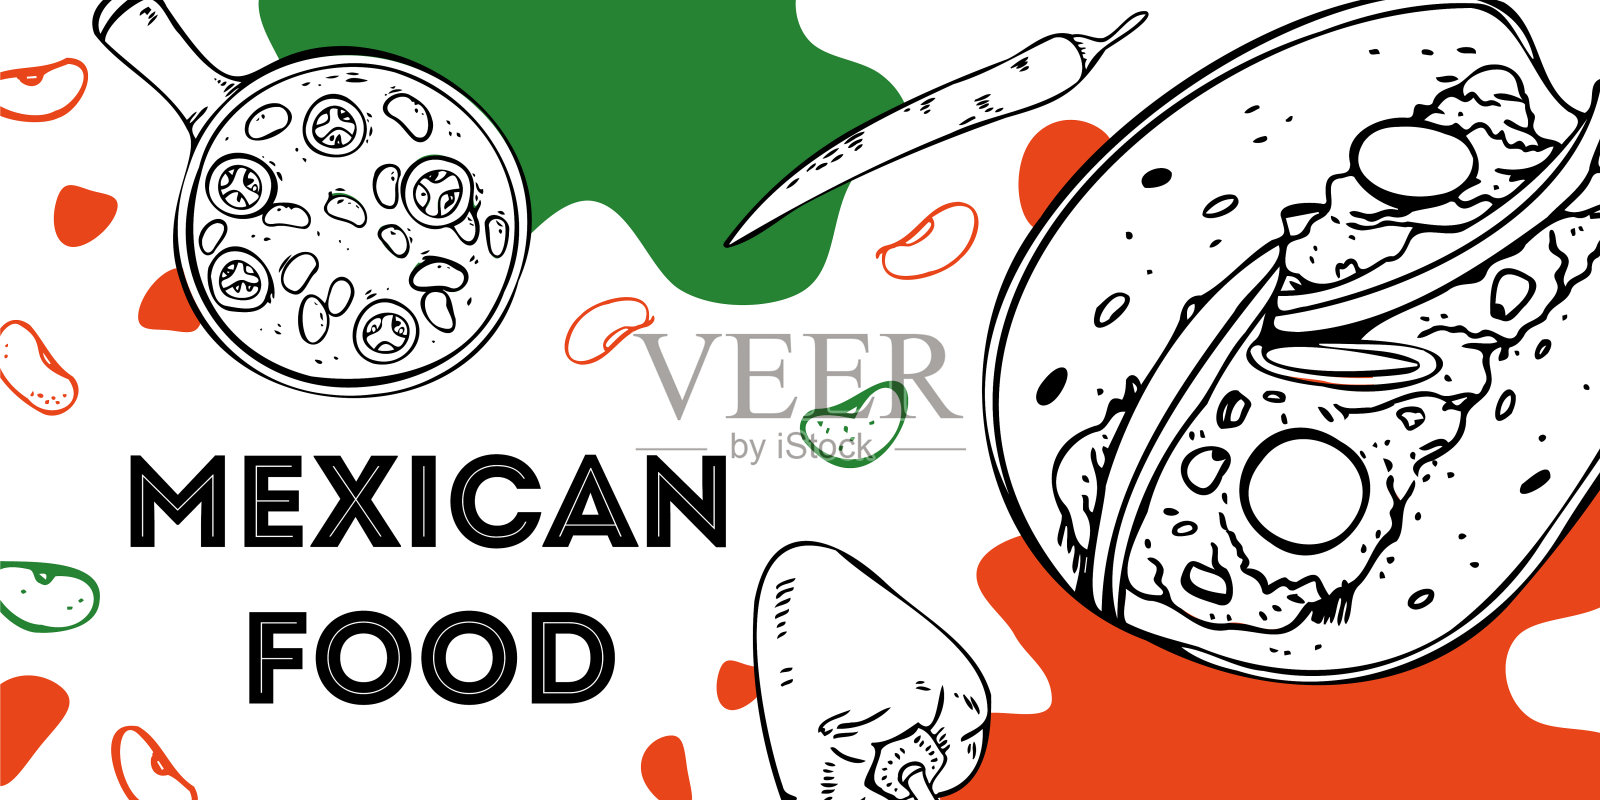 墨西哥食品传单设计模板。墨西哥玉米粉饼和辣味牛肉配蔬菜。手绘轮廓矢量草图图形插画图片素材